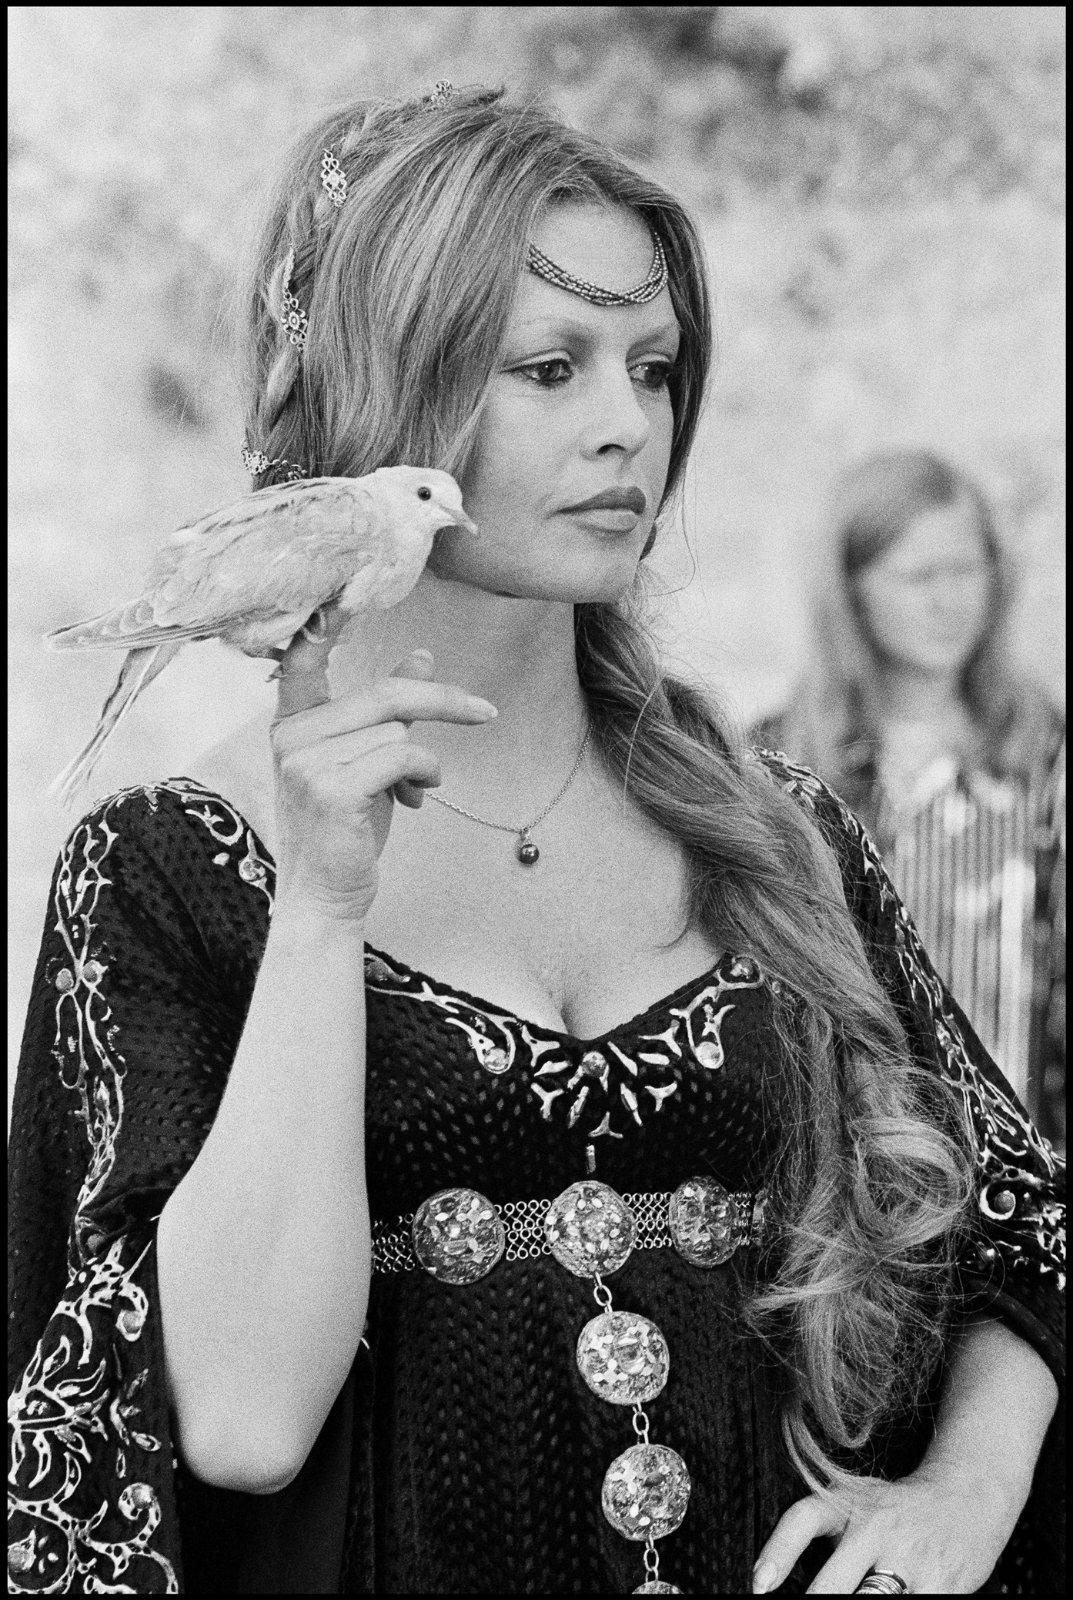 Brigitte Bardot « Colinot trousse chemise » by Léonard de Raemy, 1973